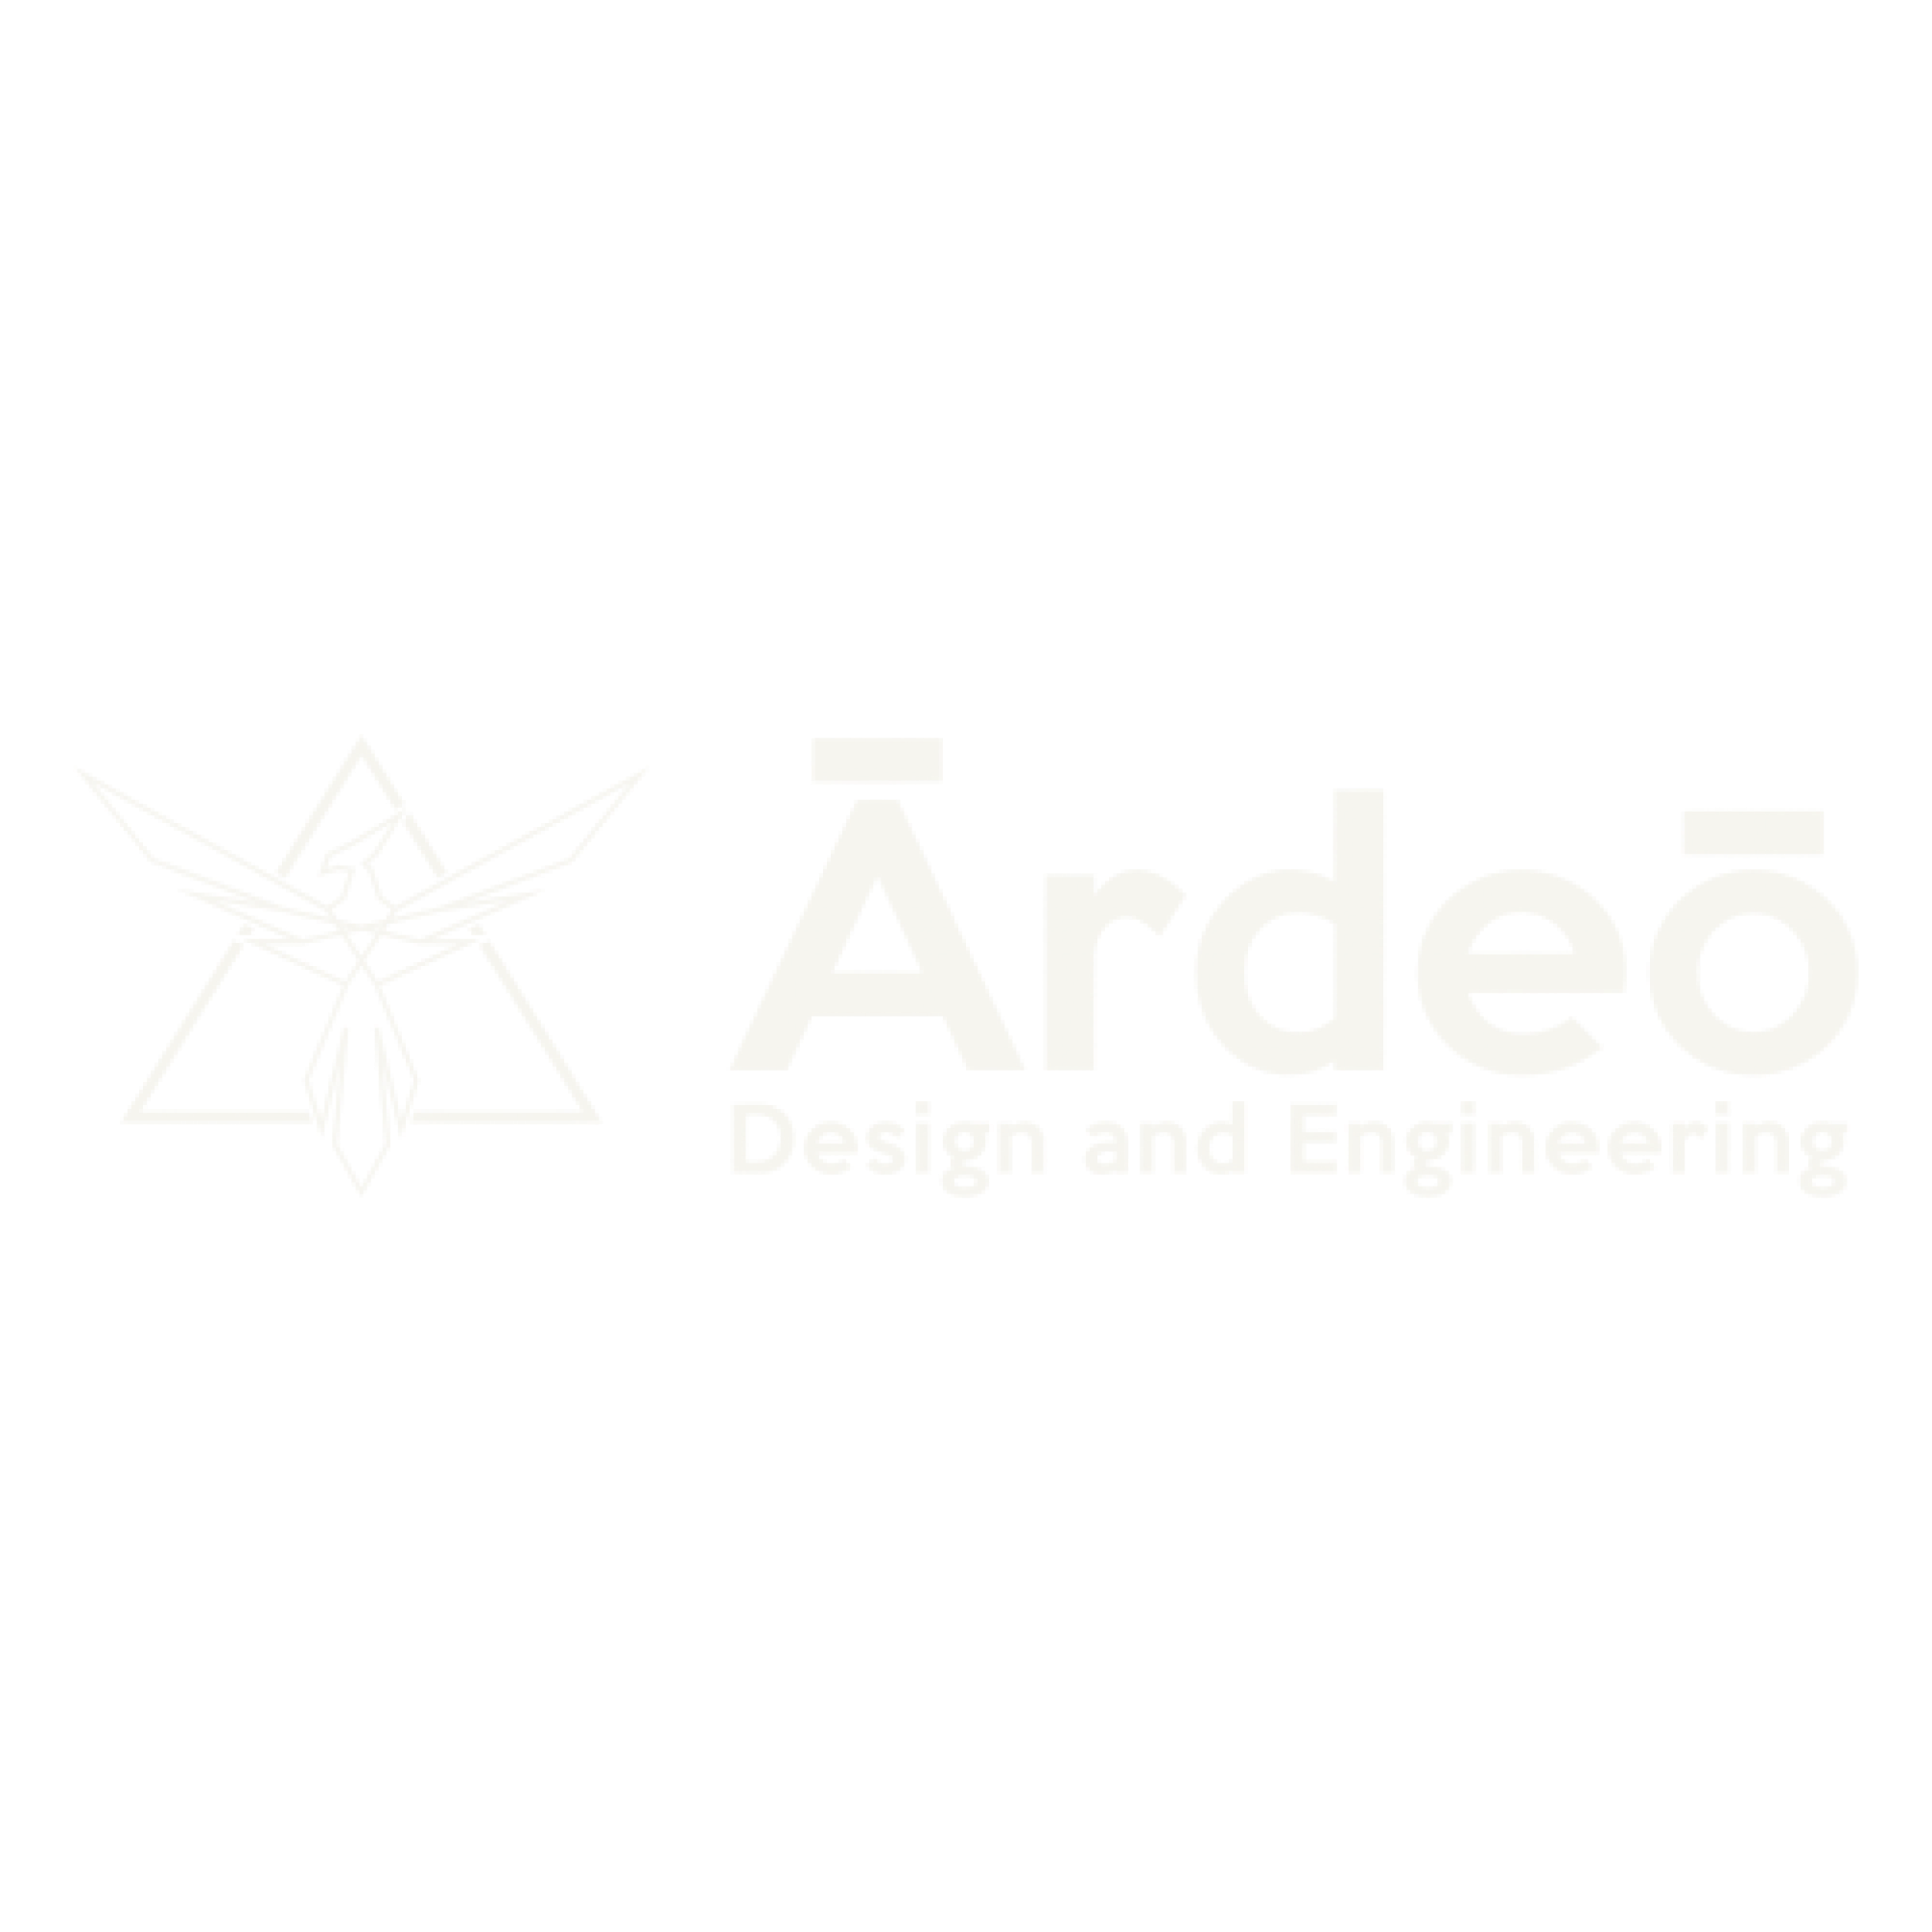 Ārdeō Design and Engineering